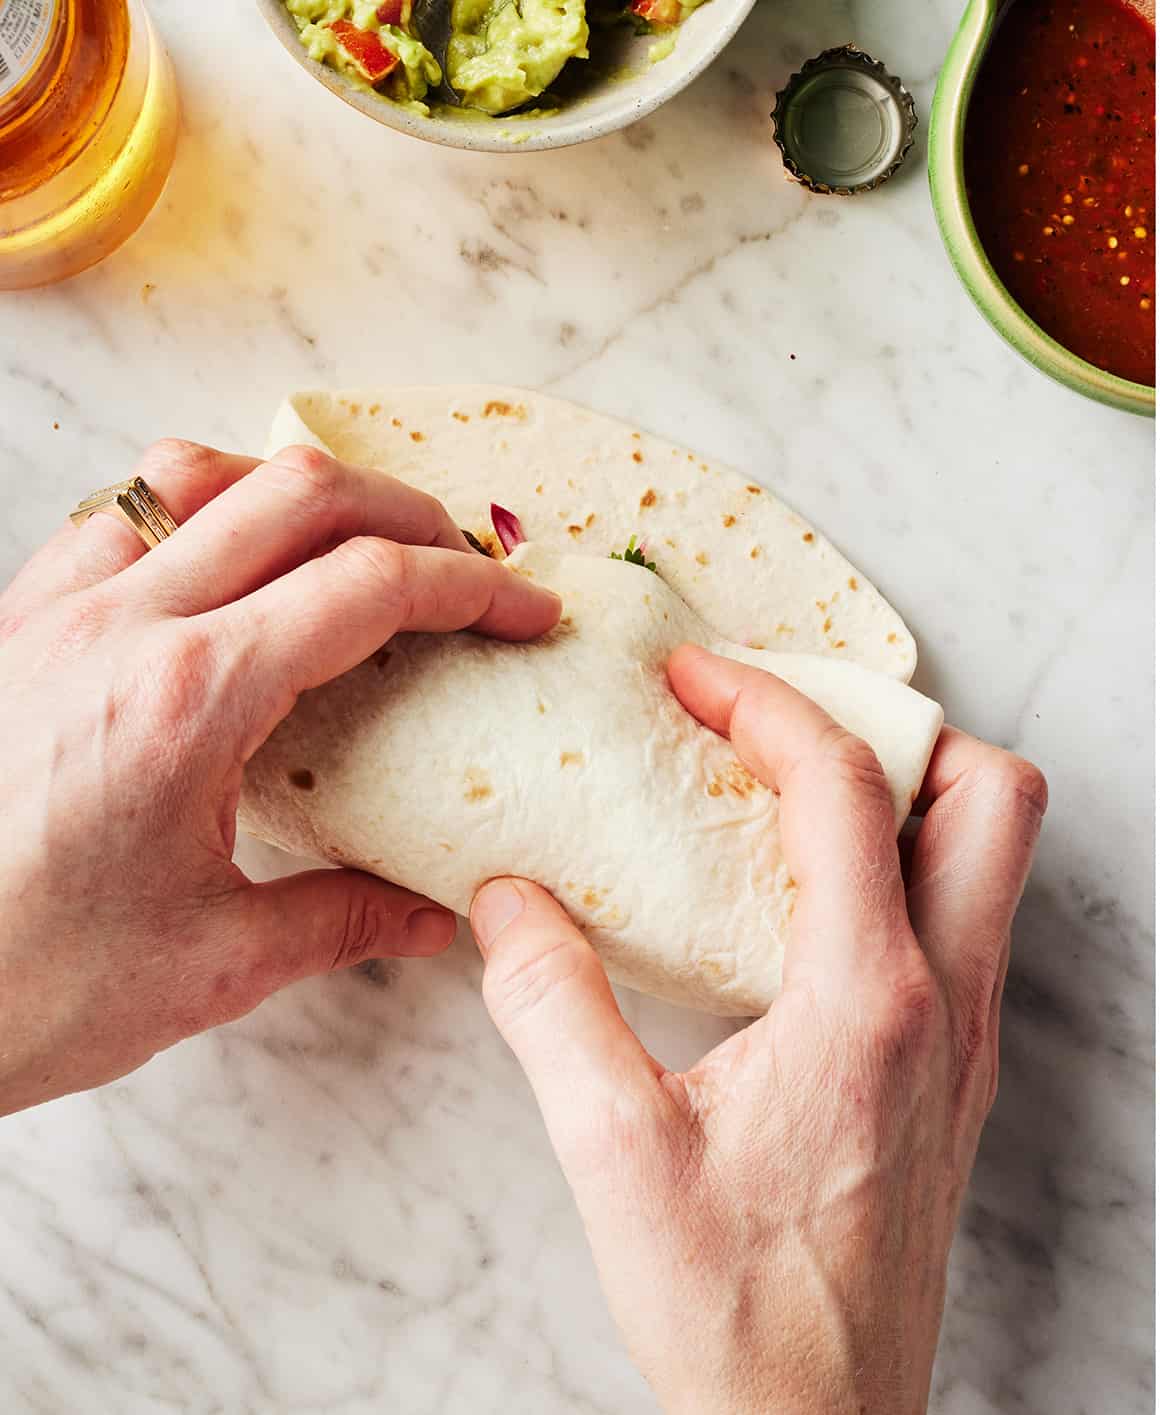 How to fold a burrito